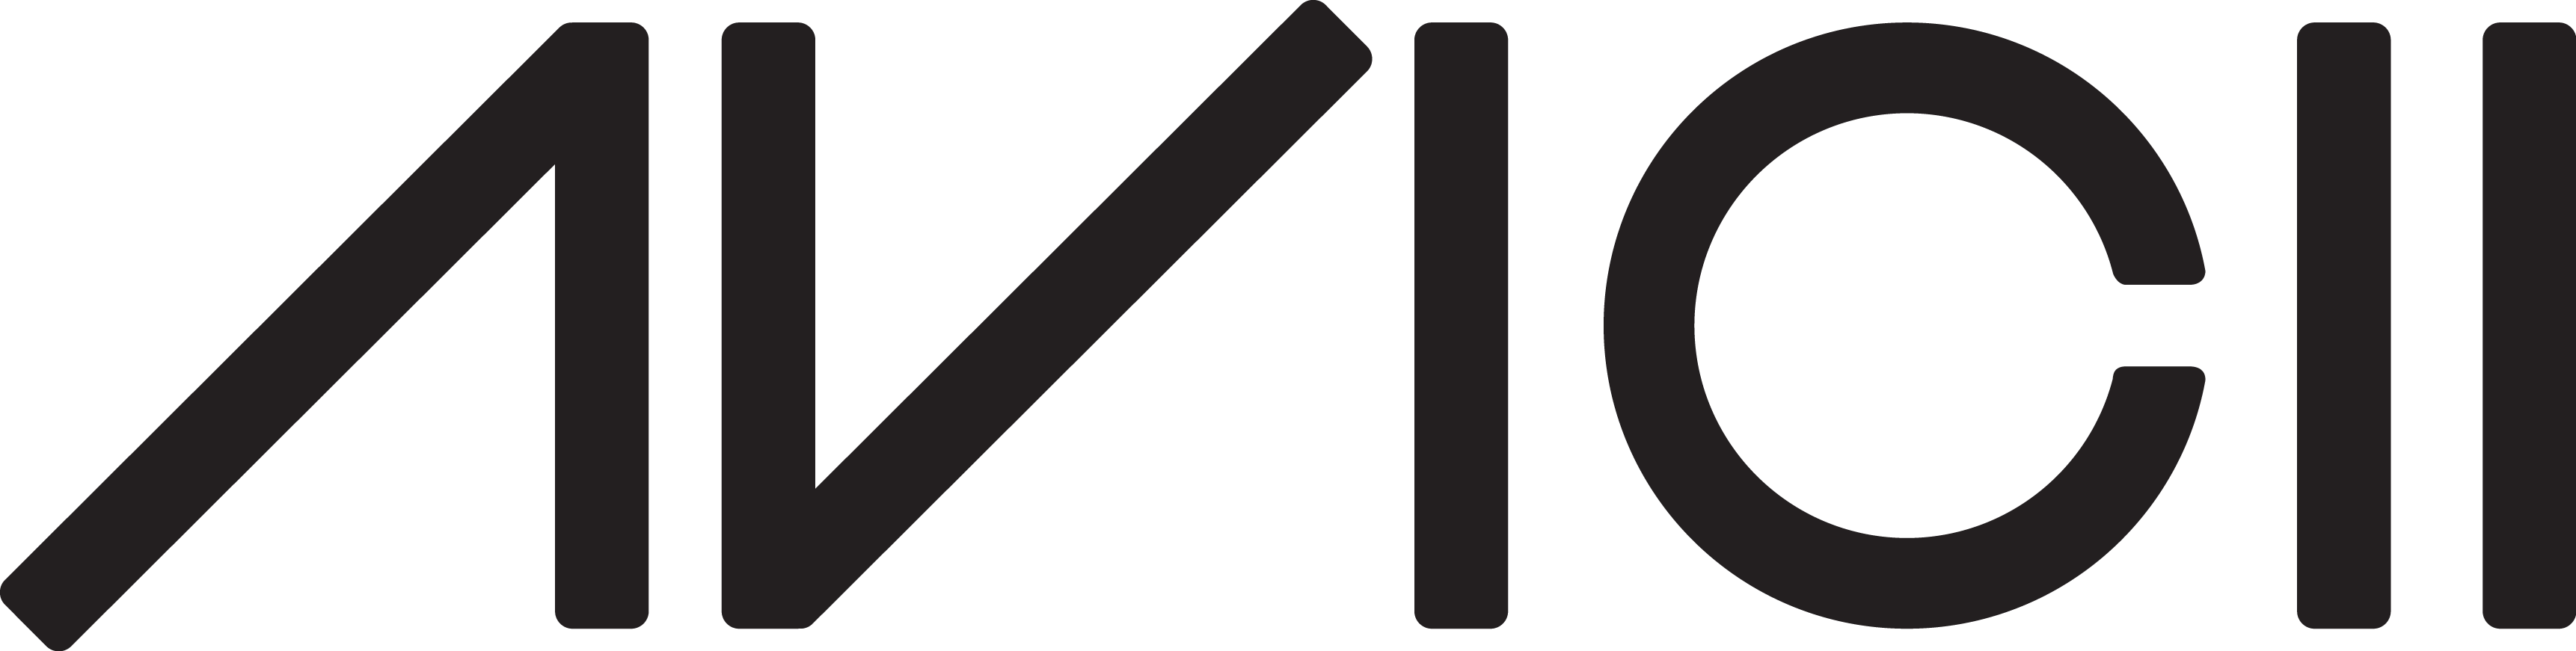 Avicii Logo [eps Dj] - Avicii Rest In Peace (3444x871)